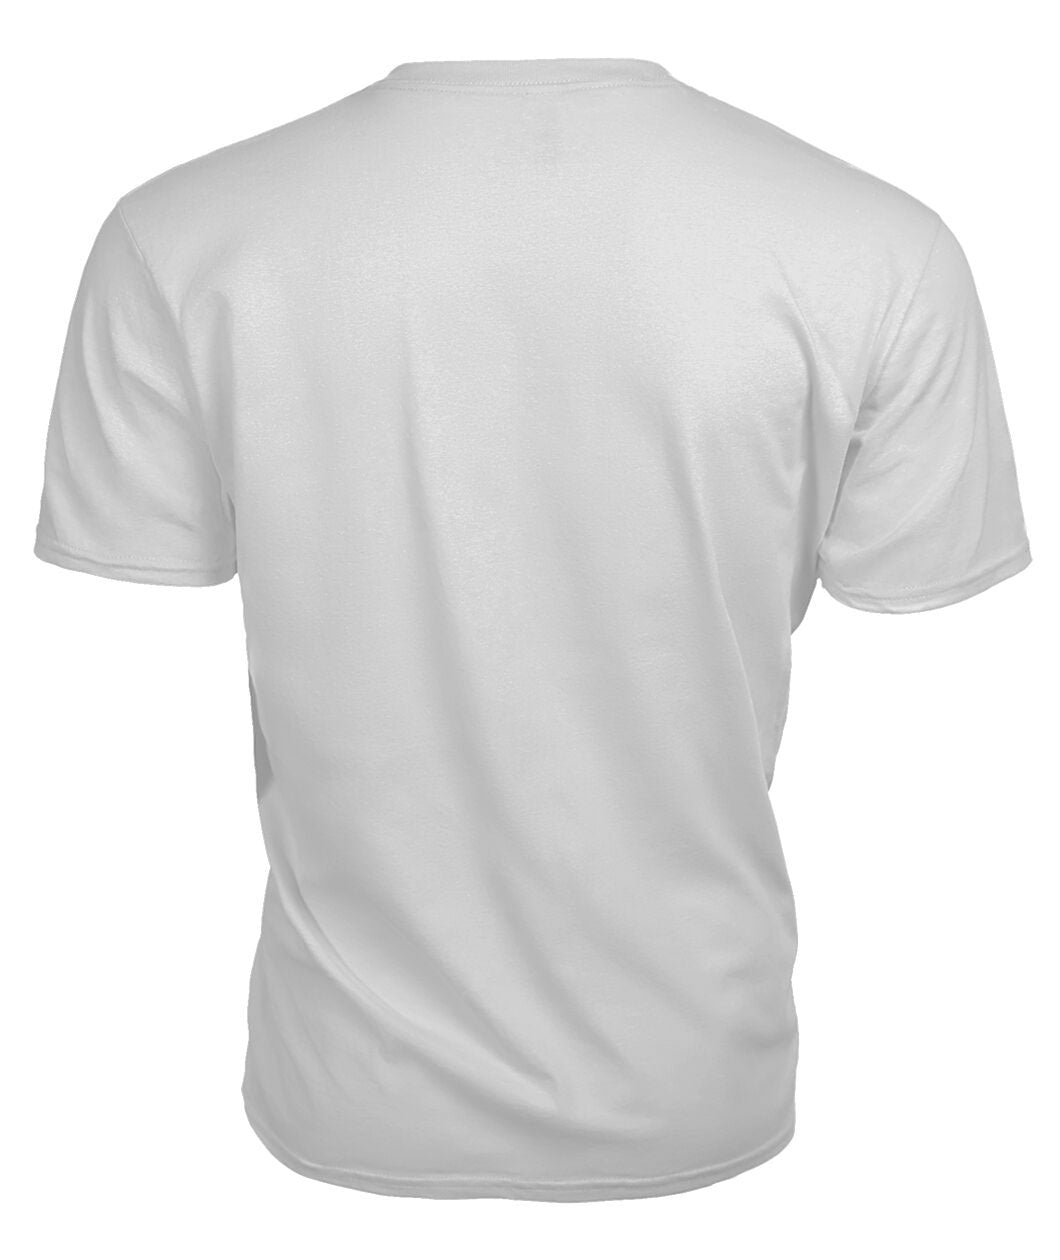 Chalmers Tartan Crest 2D T-shirt - Blood Runs Through My Veins Style